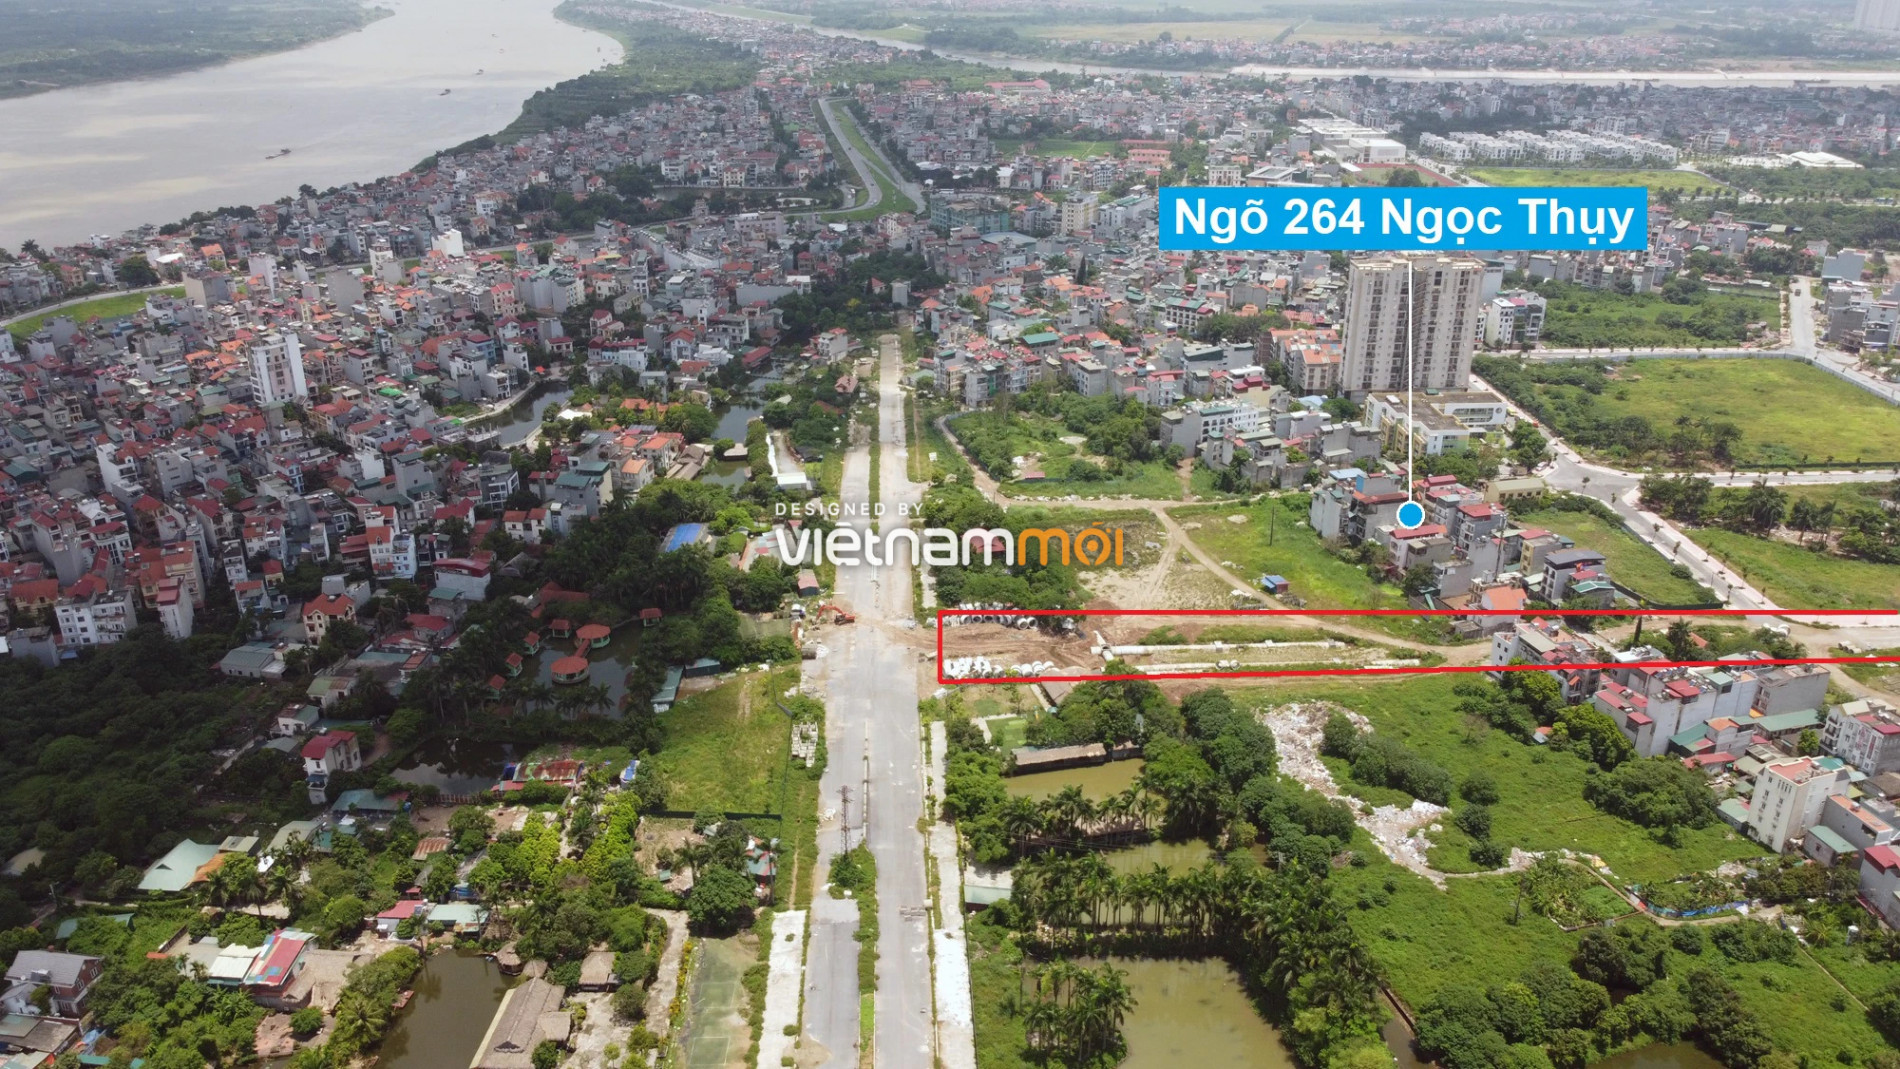 Những khu đất sắp thu hồi để mở đường ở phường Ngọc Thụy, Long Biên, Hà Nội (phần 6) - Ảnh 13.